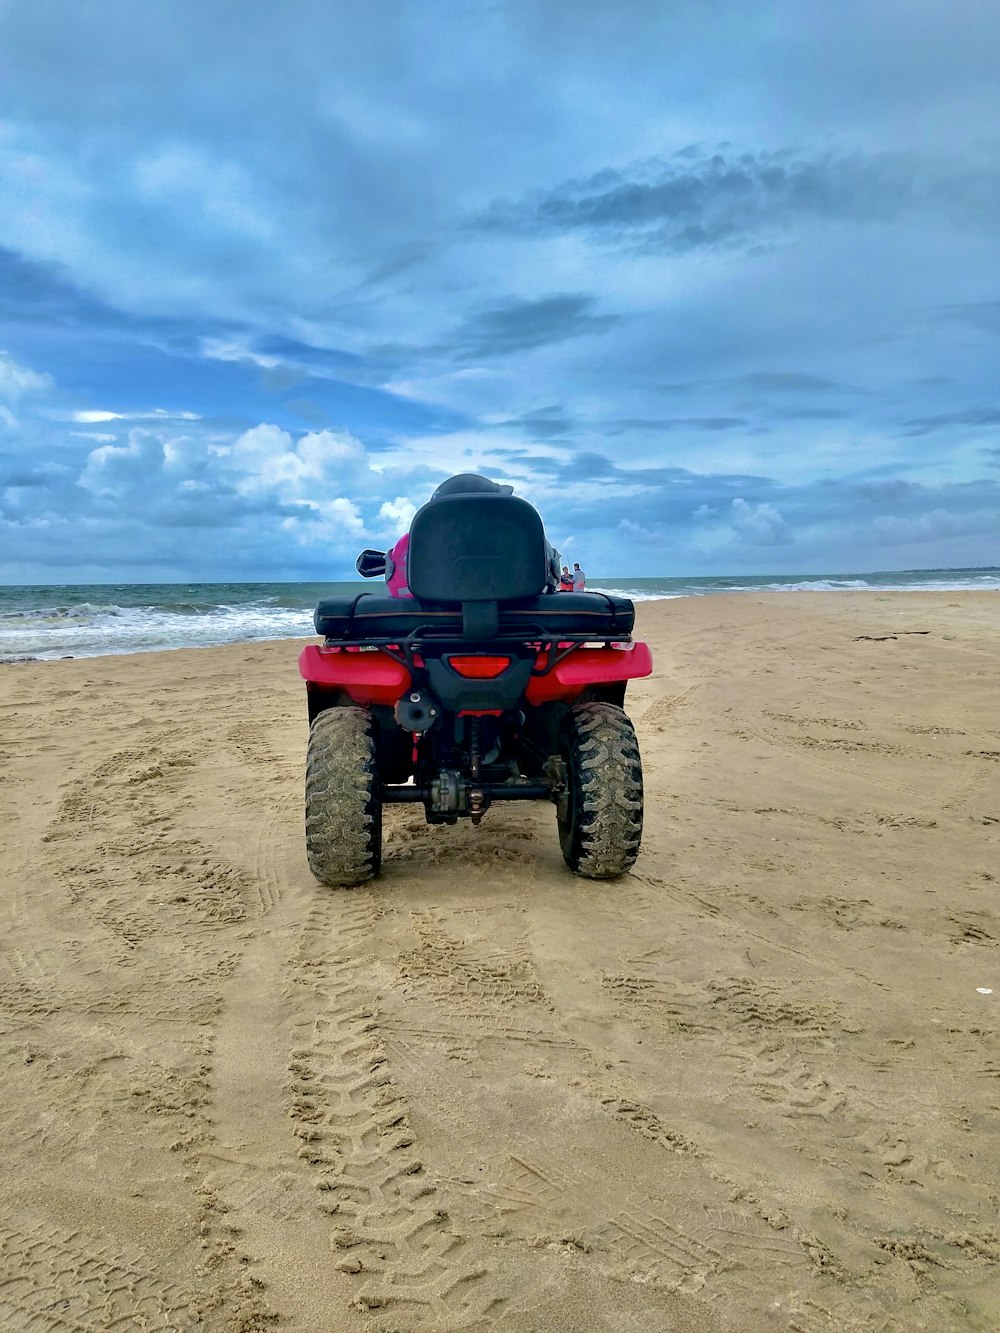 Un veicolo rosso e nero su una spiaggia sabbiosa